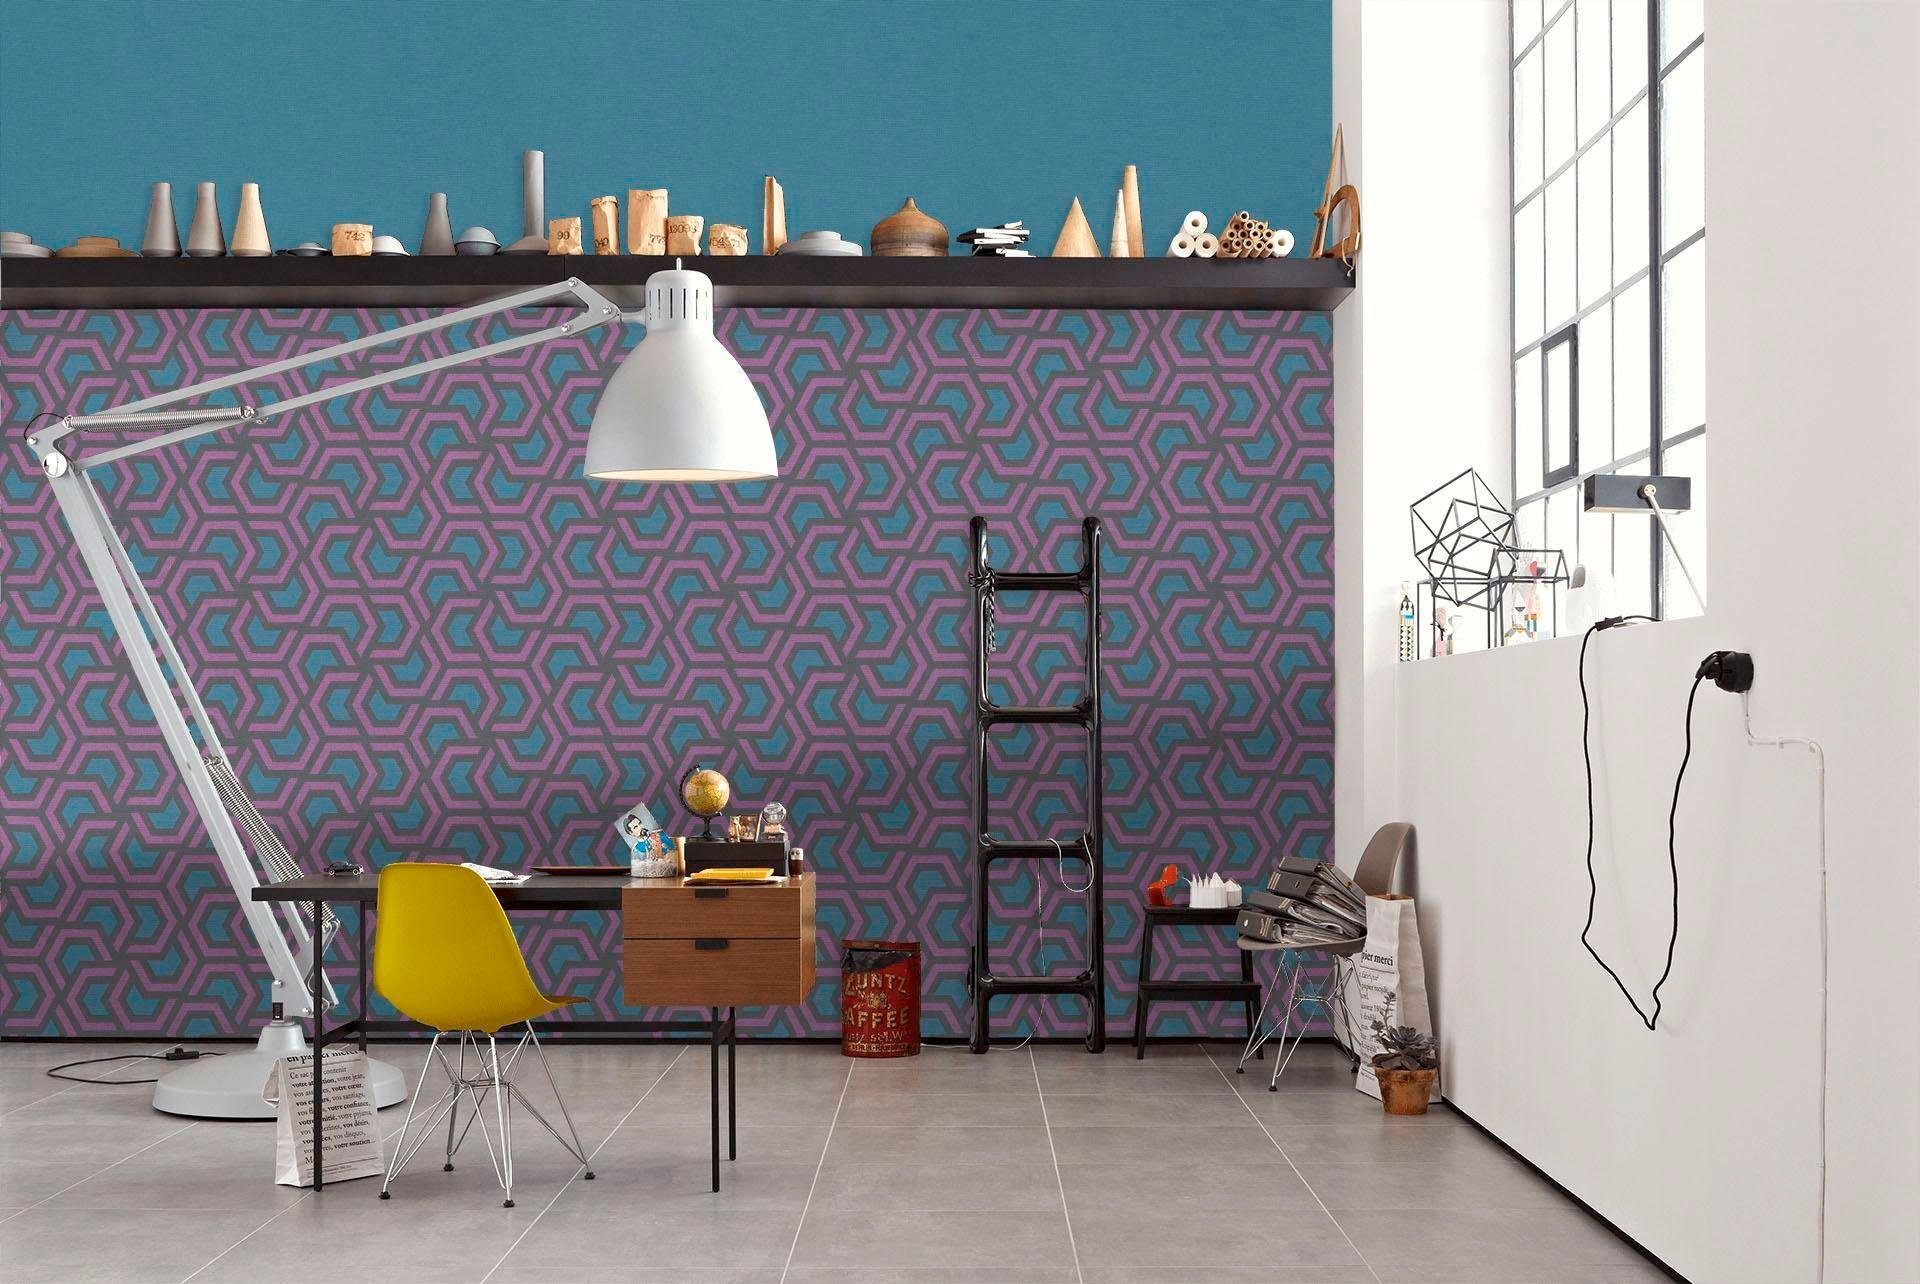 grafisch living Linen Style, geometrisch, Vliestapete walls Création A.S. violett/grau/blau